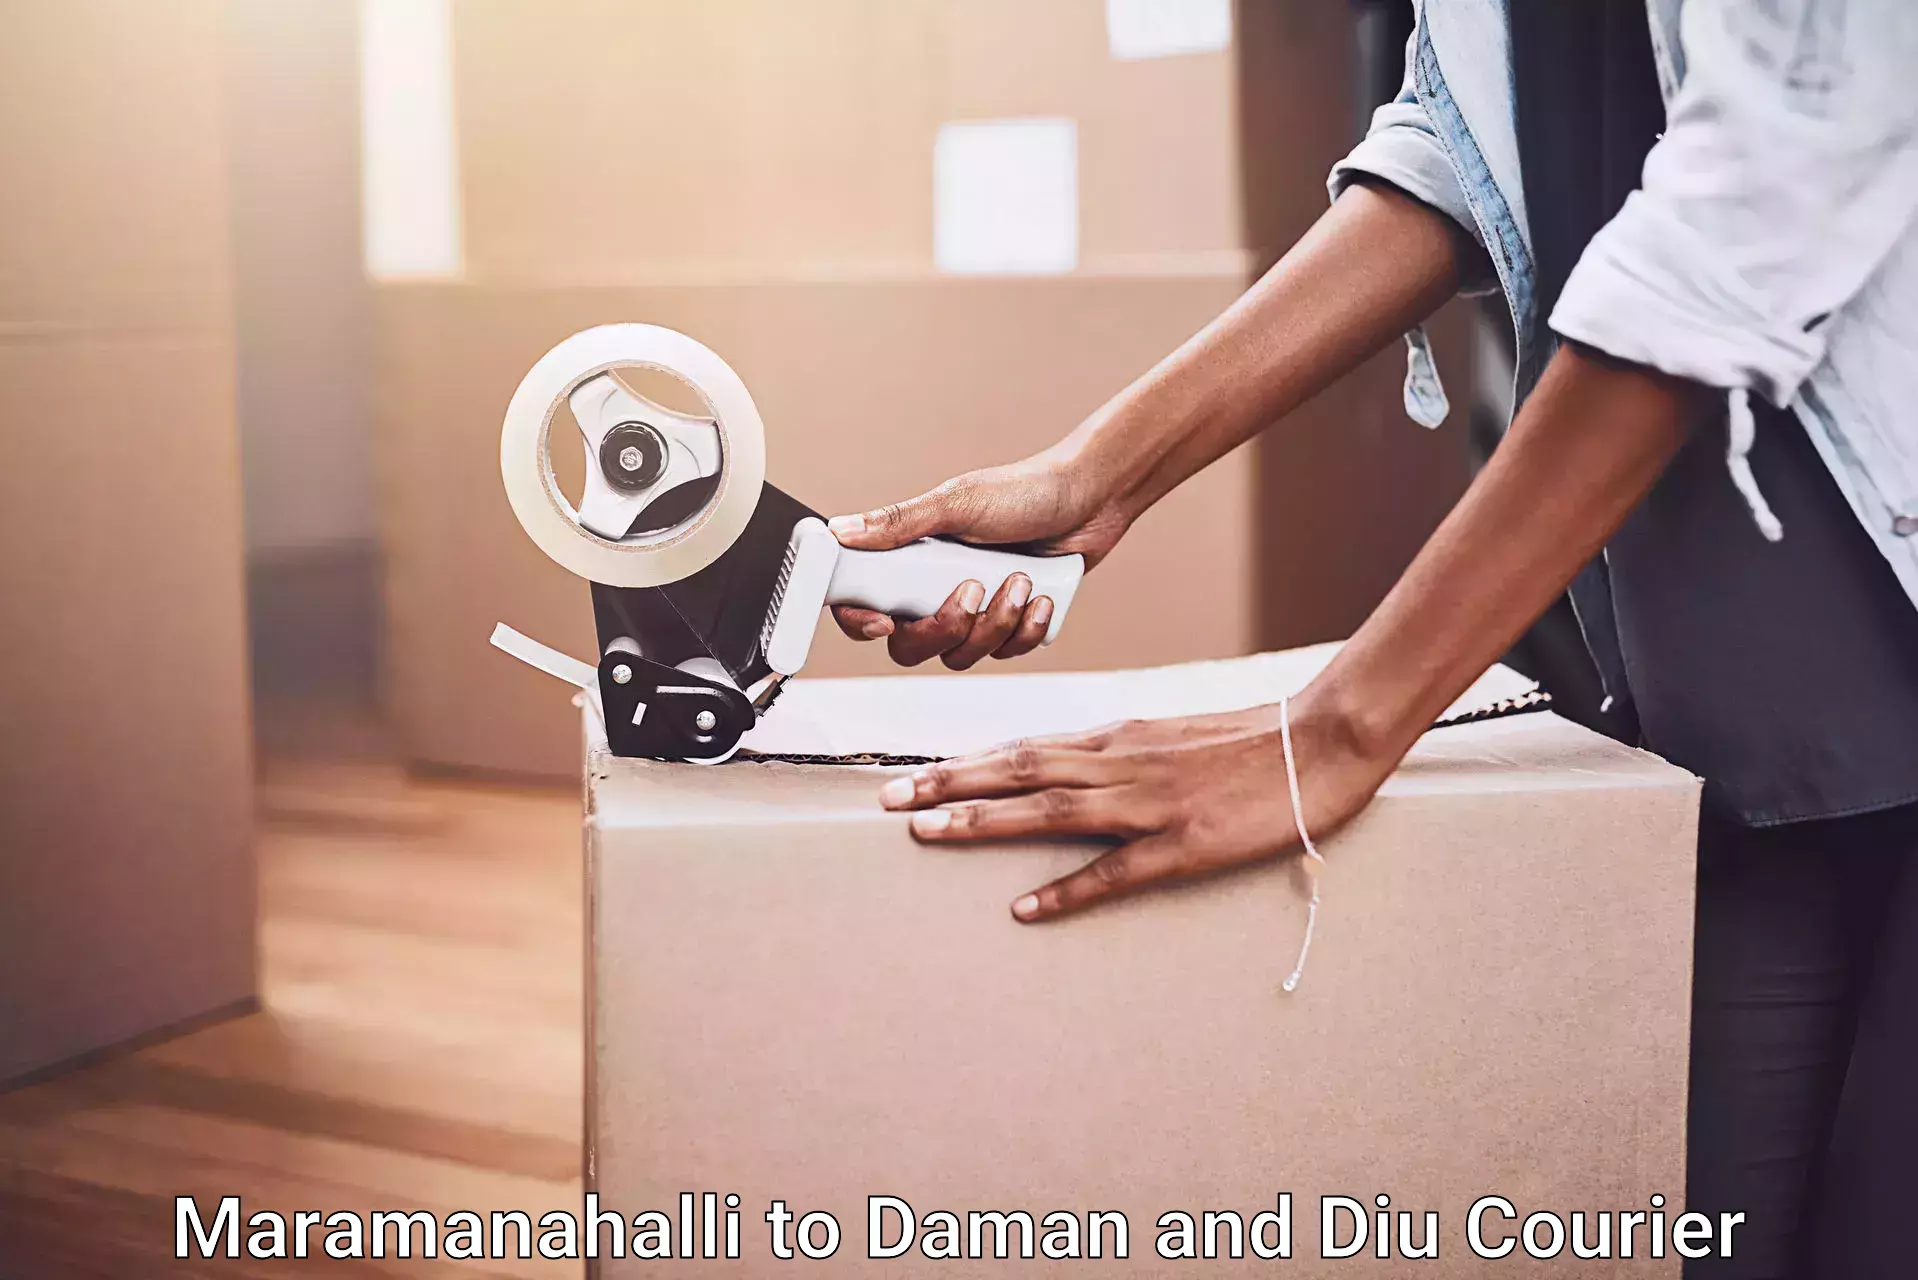 Reliable furniture movers Maramanahalli to Diu